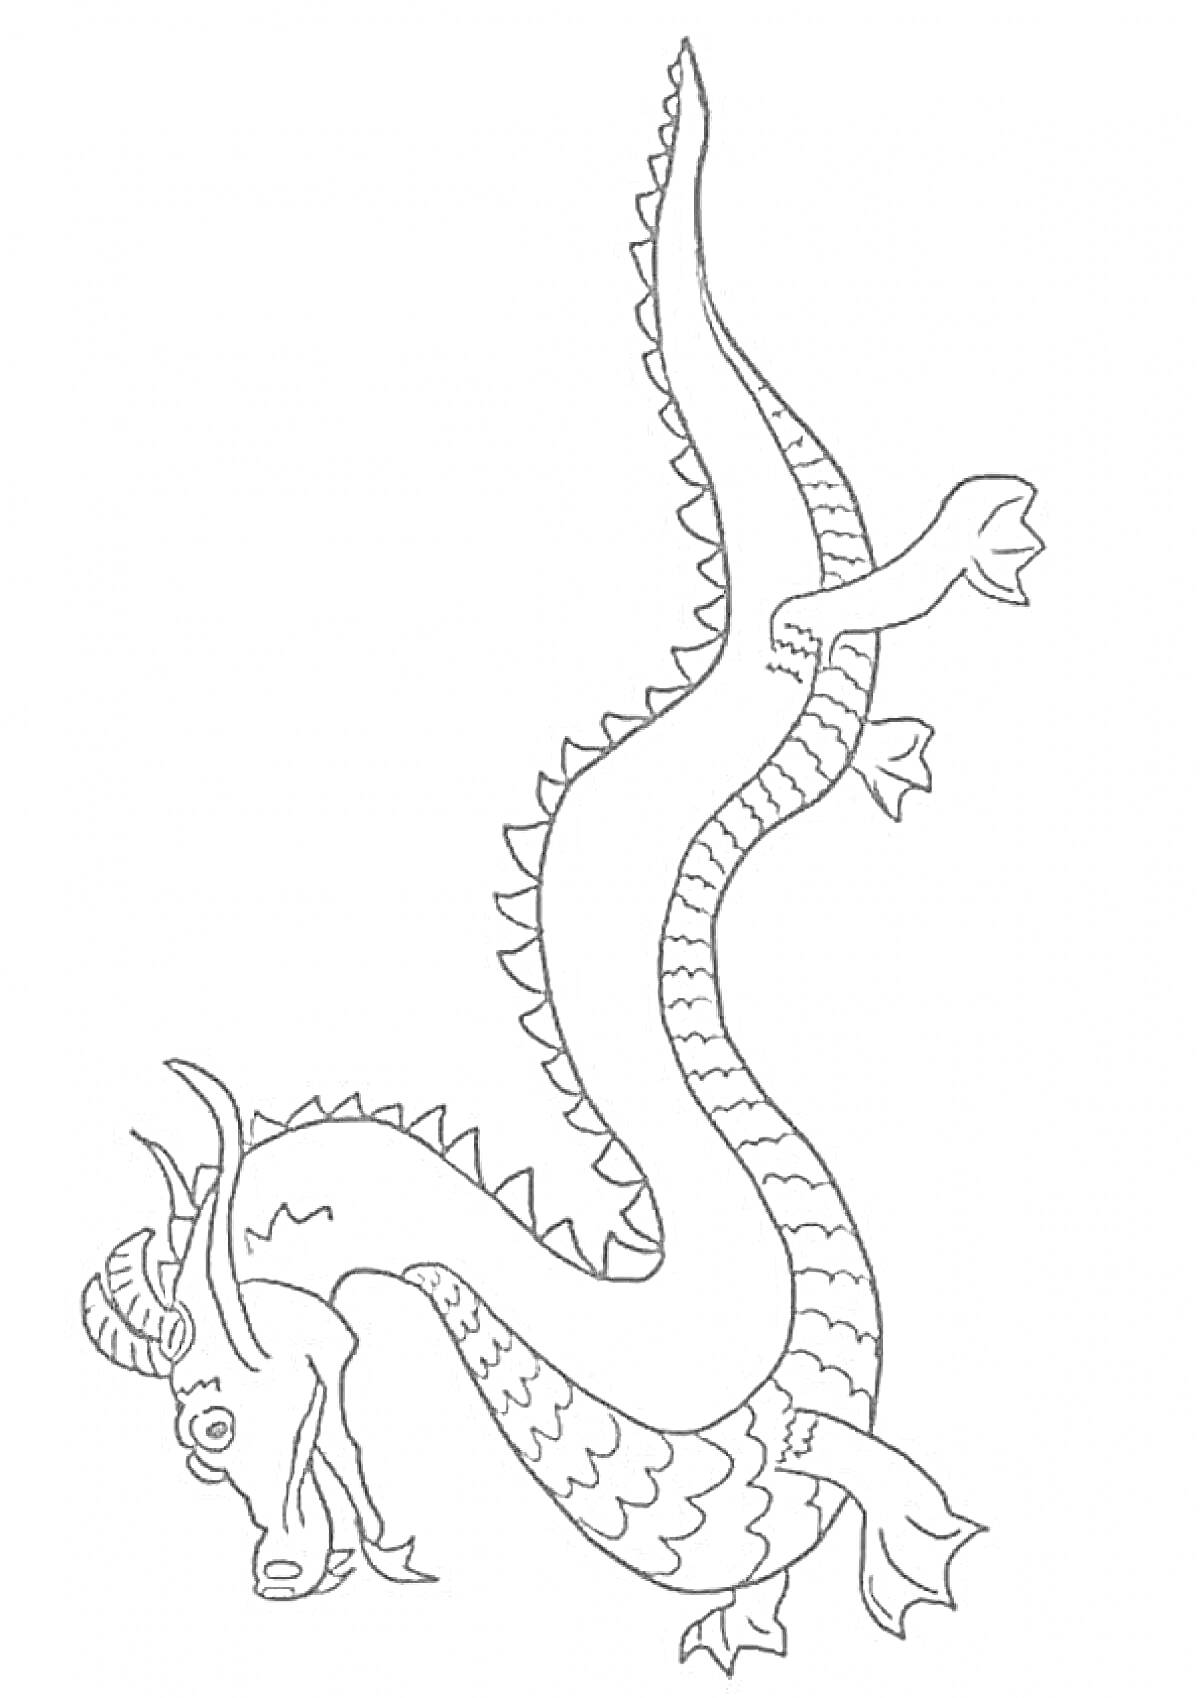 Китайский дракон с длинным изгибающимся телом, чешуйками, рогами и лапами